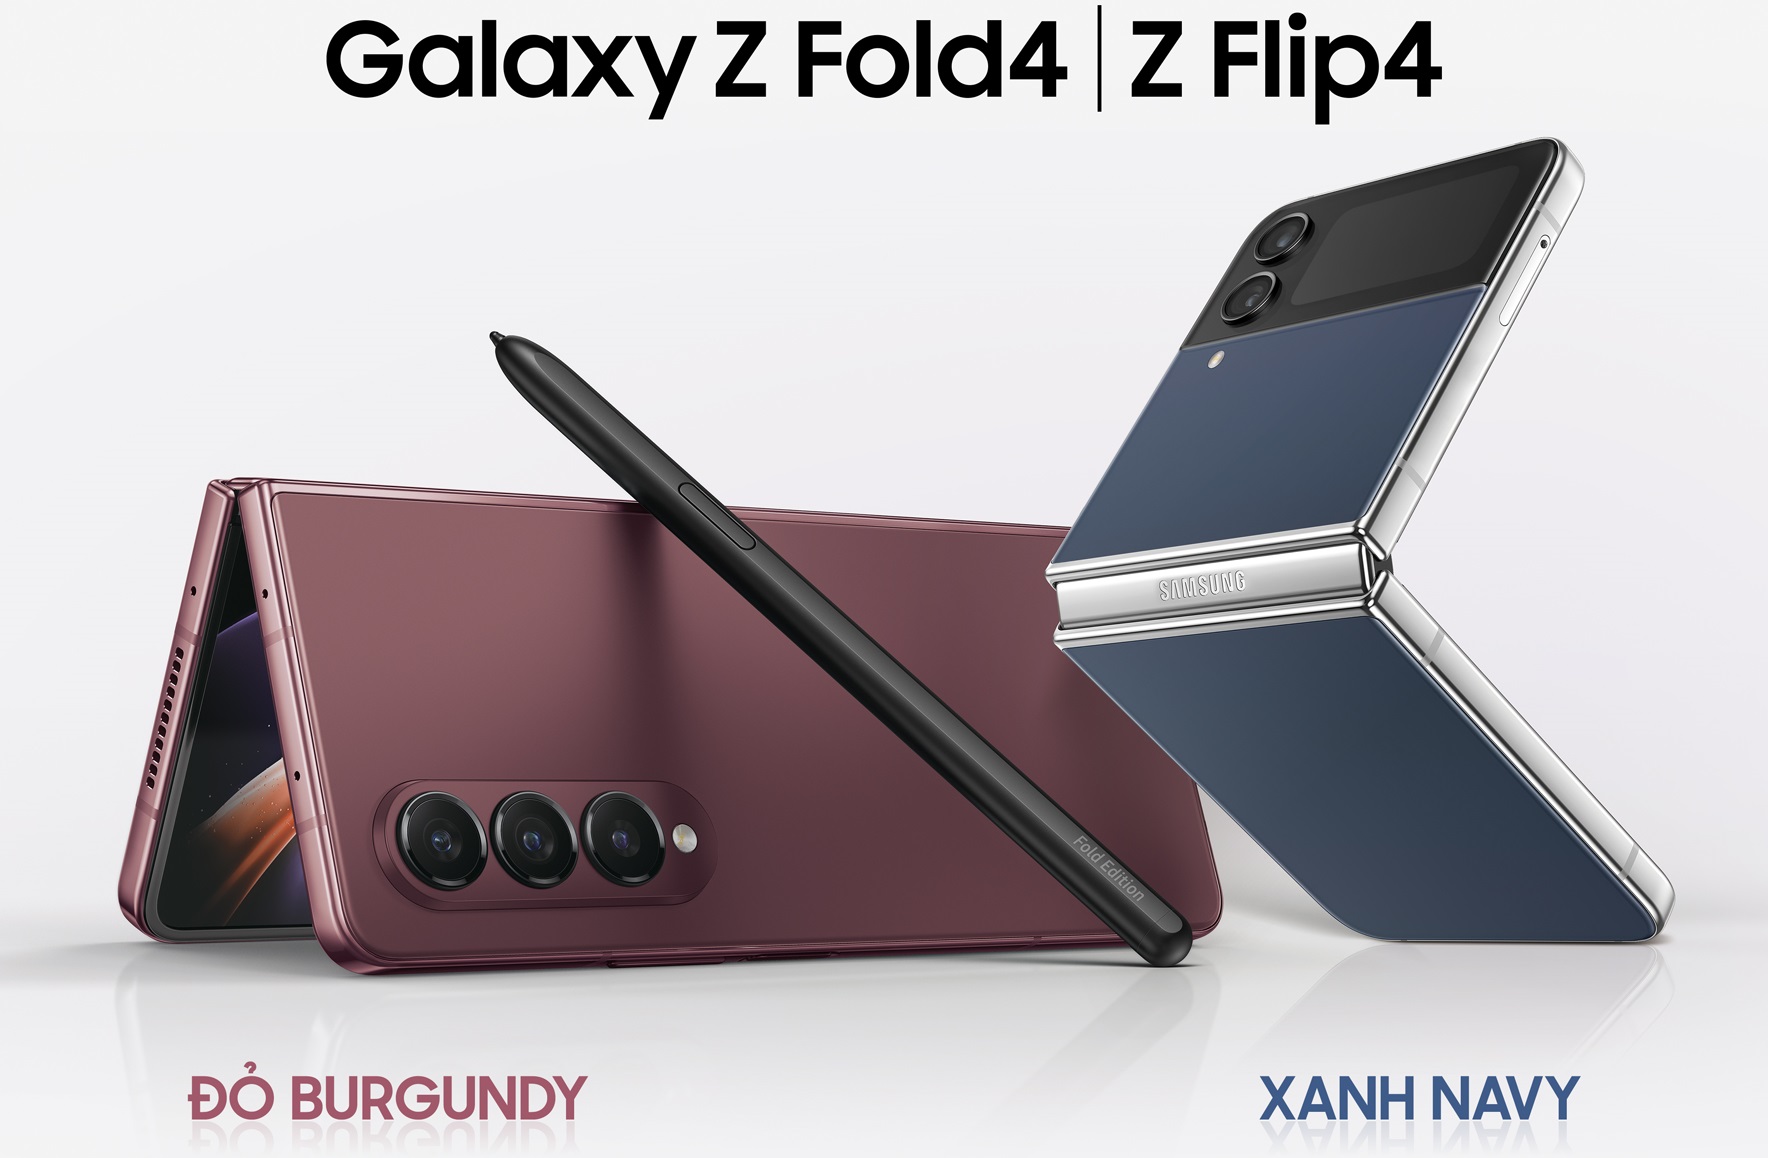 Galaxy-Z-Fold4-D-Burgundy-va-Galaxy-Z-Flip4-Xanh-Navy.jpg